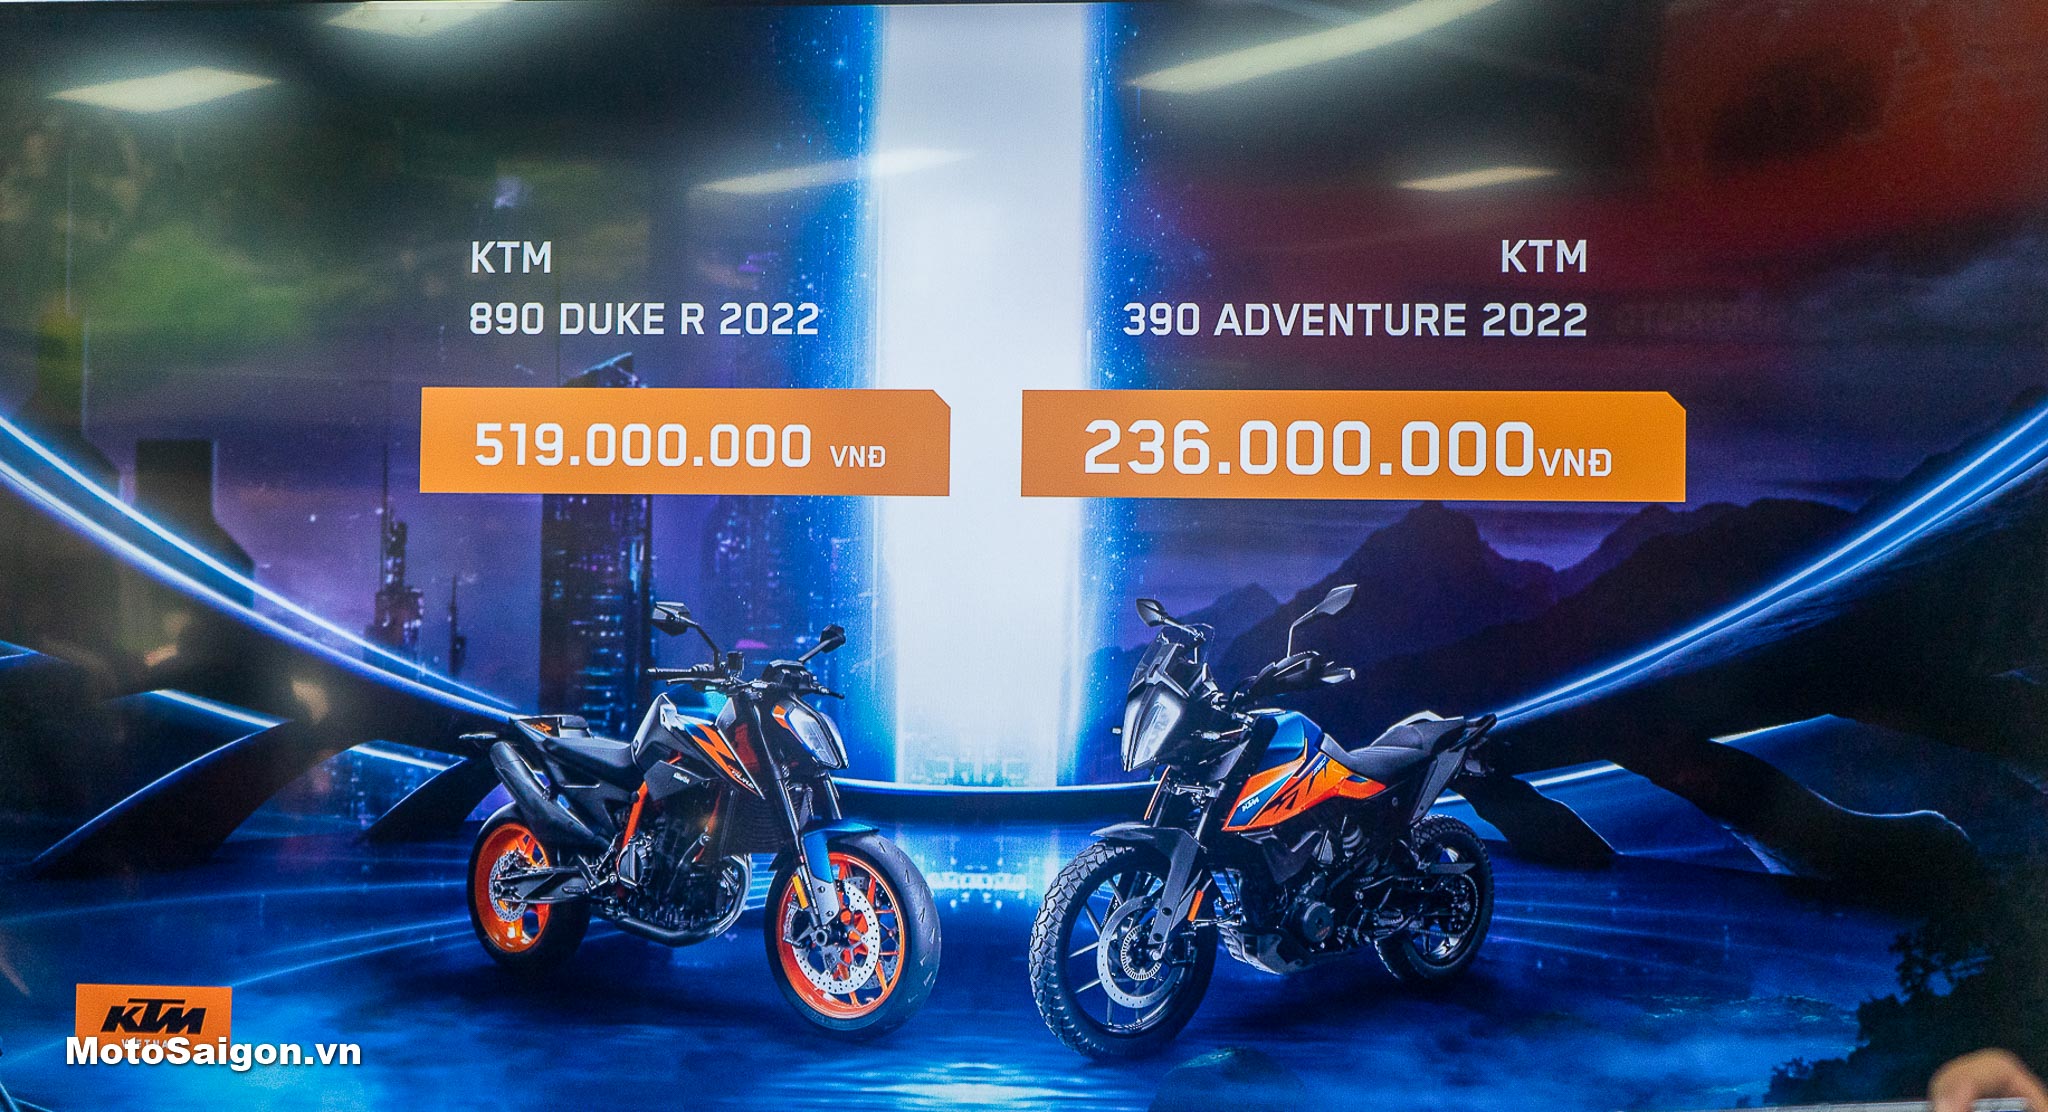 Giá xe KTM 890 Duke R 2022 | Giá xe KTM 390 Adventure 2022 (390 Adv)